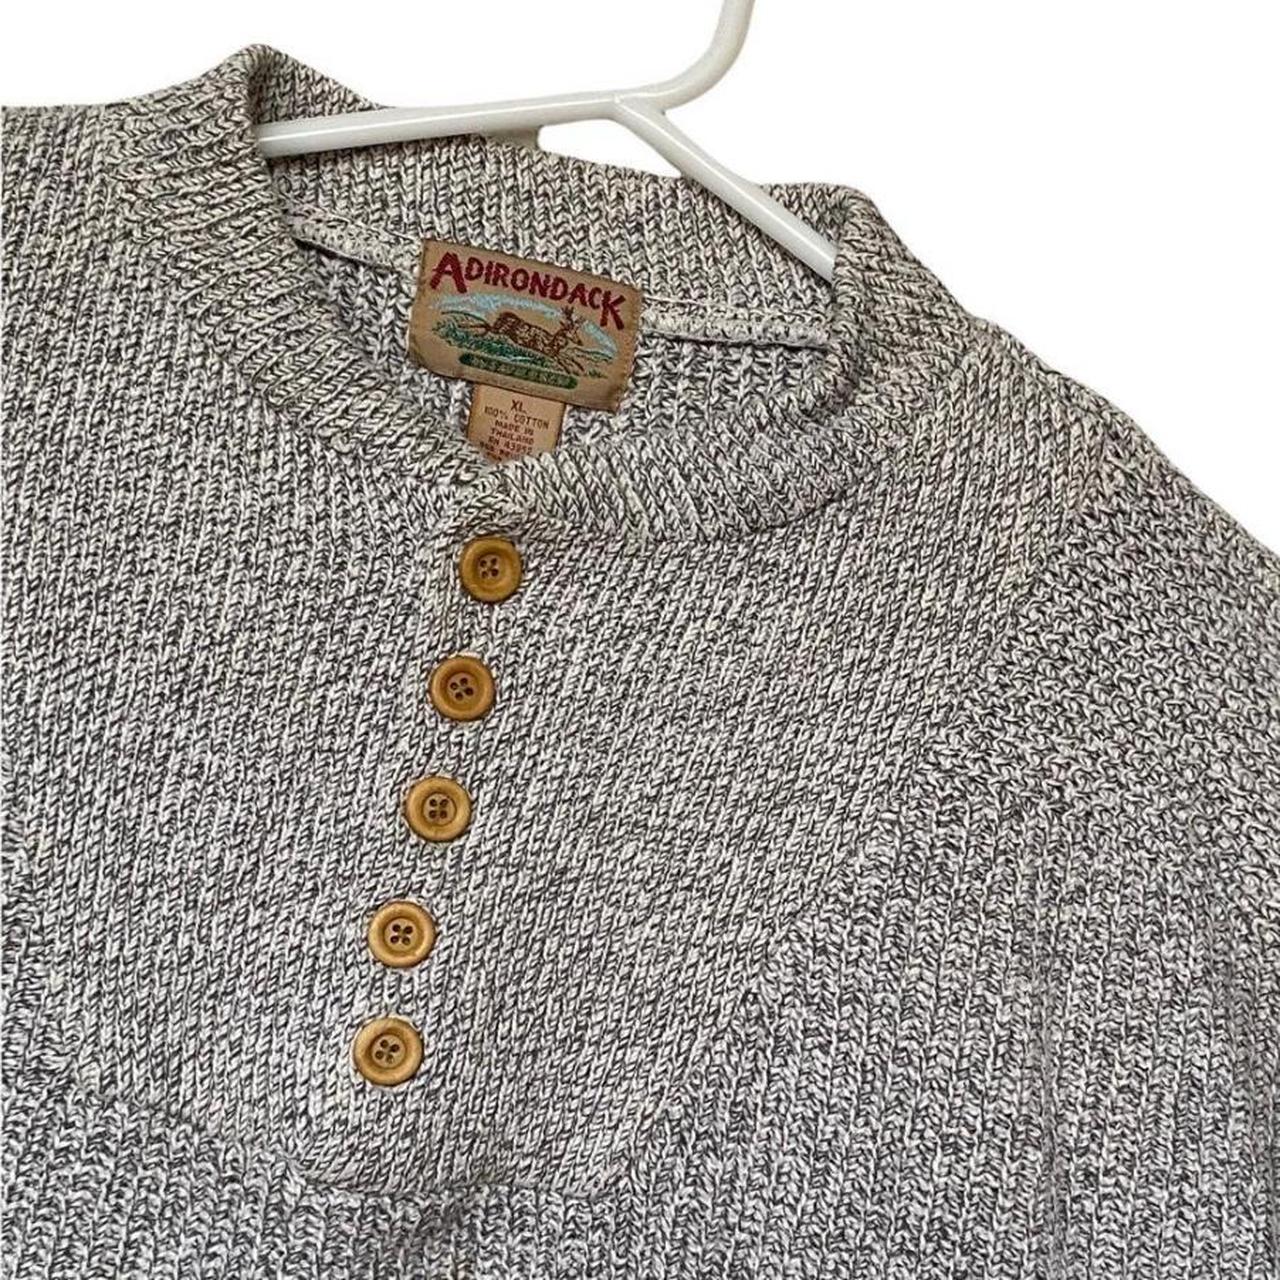 Adirondack 90s vintage knit jumper. Henley neck... - Depop